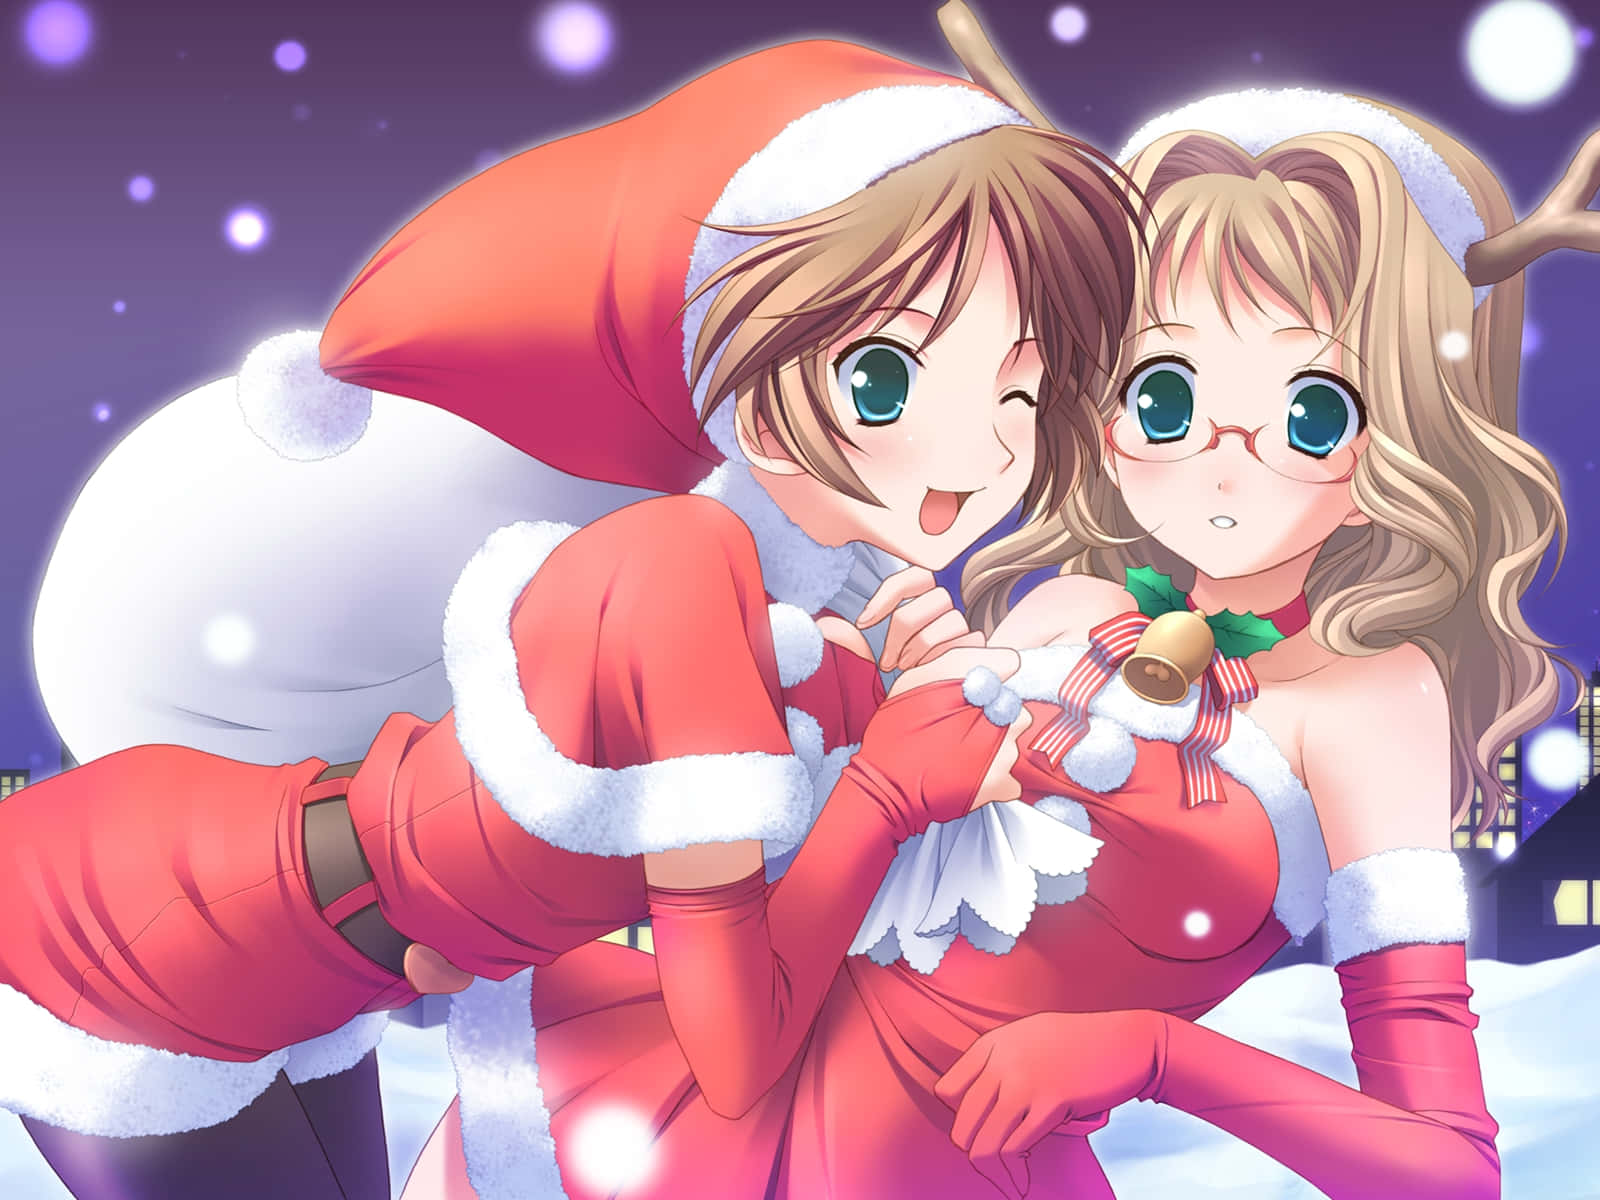 Feiernsie Weihnachten Mit Ihren Liebsten Anime-charakteren!